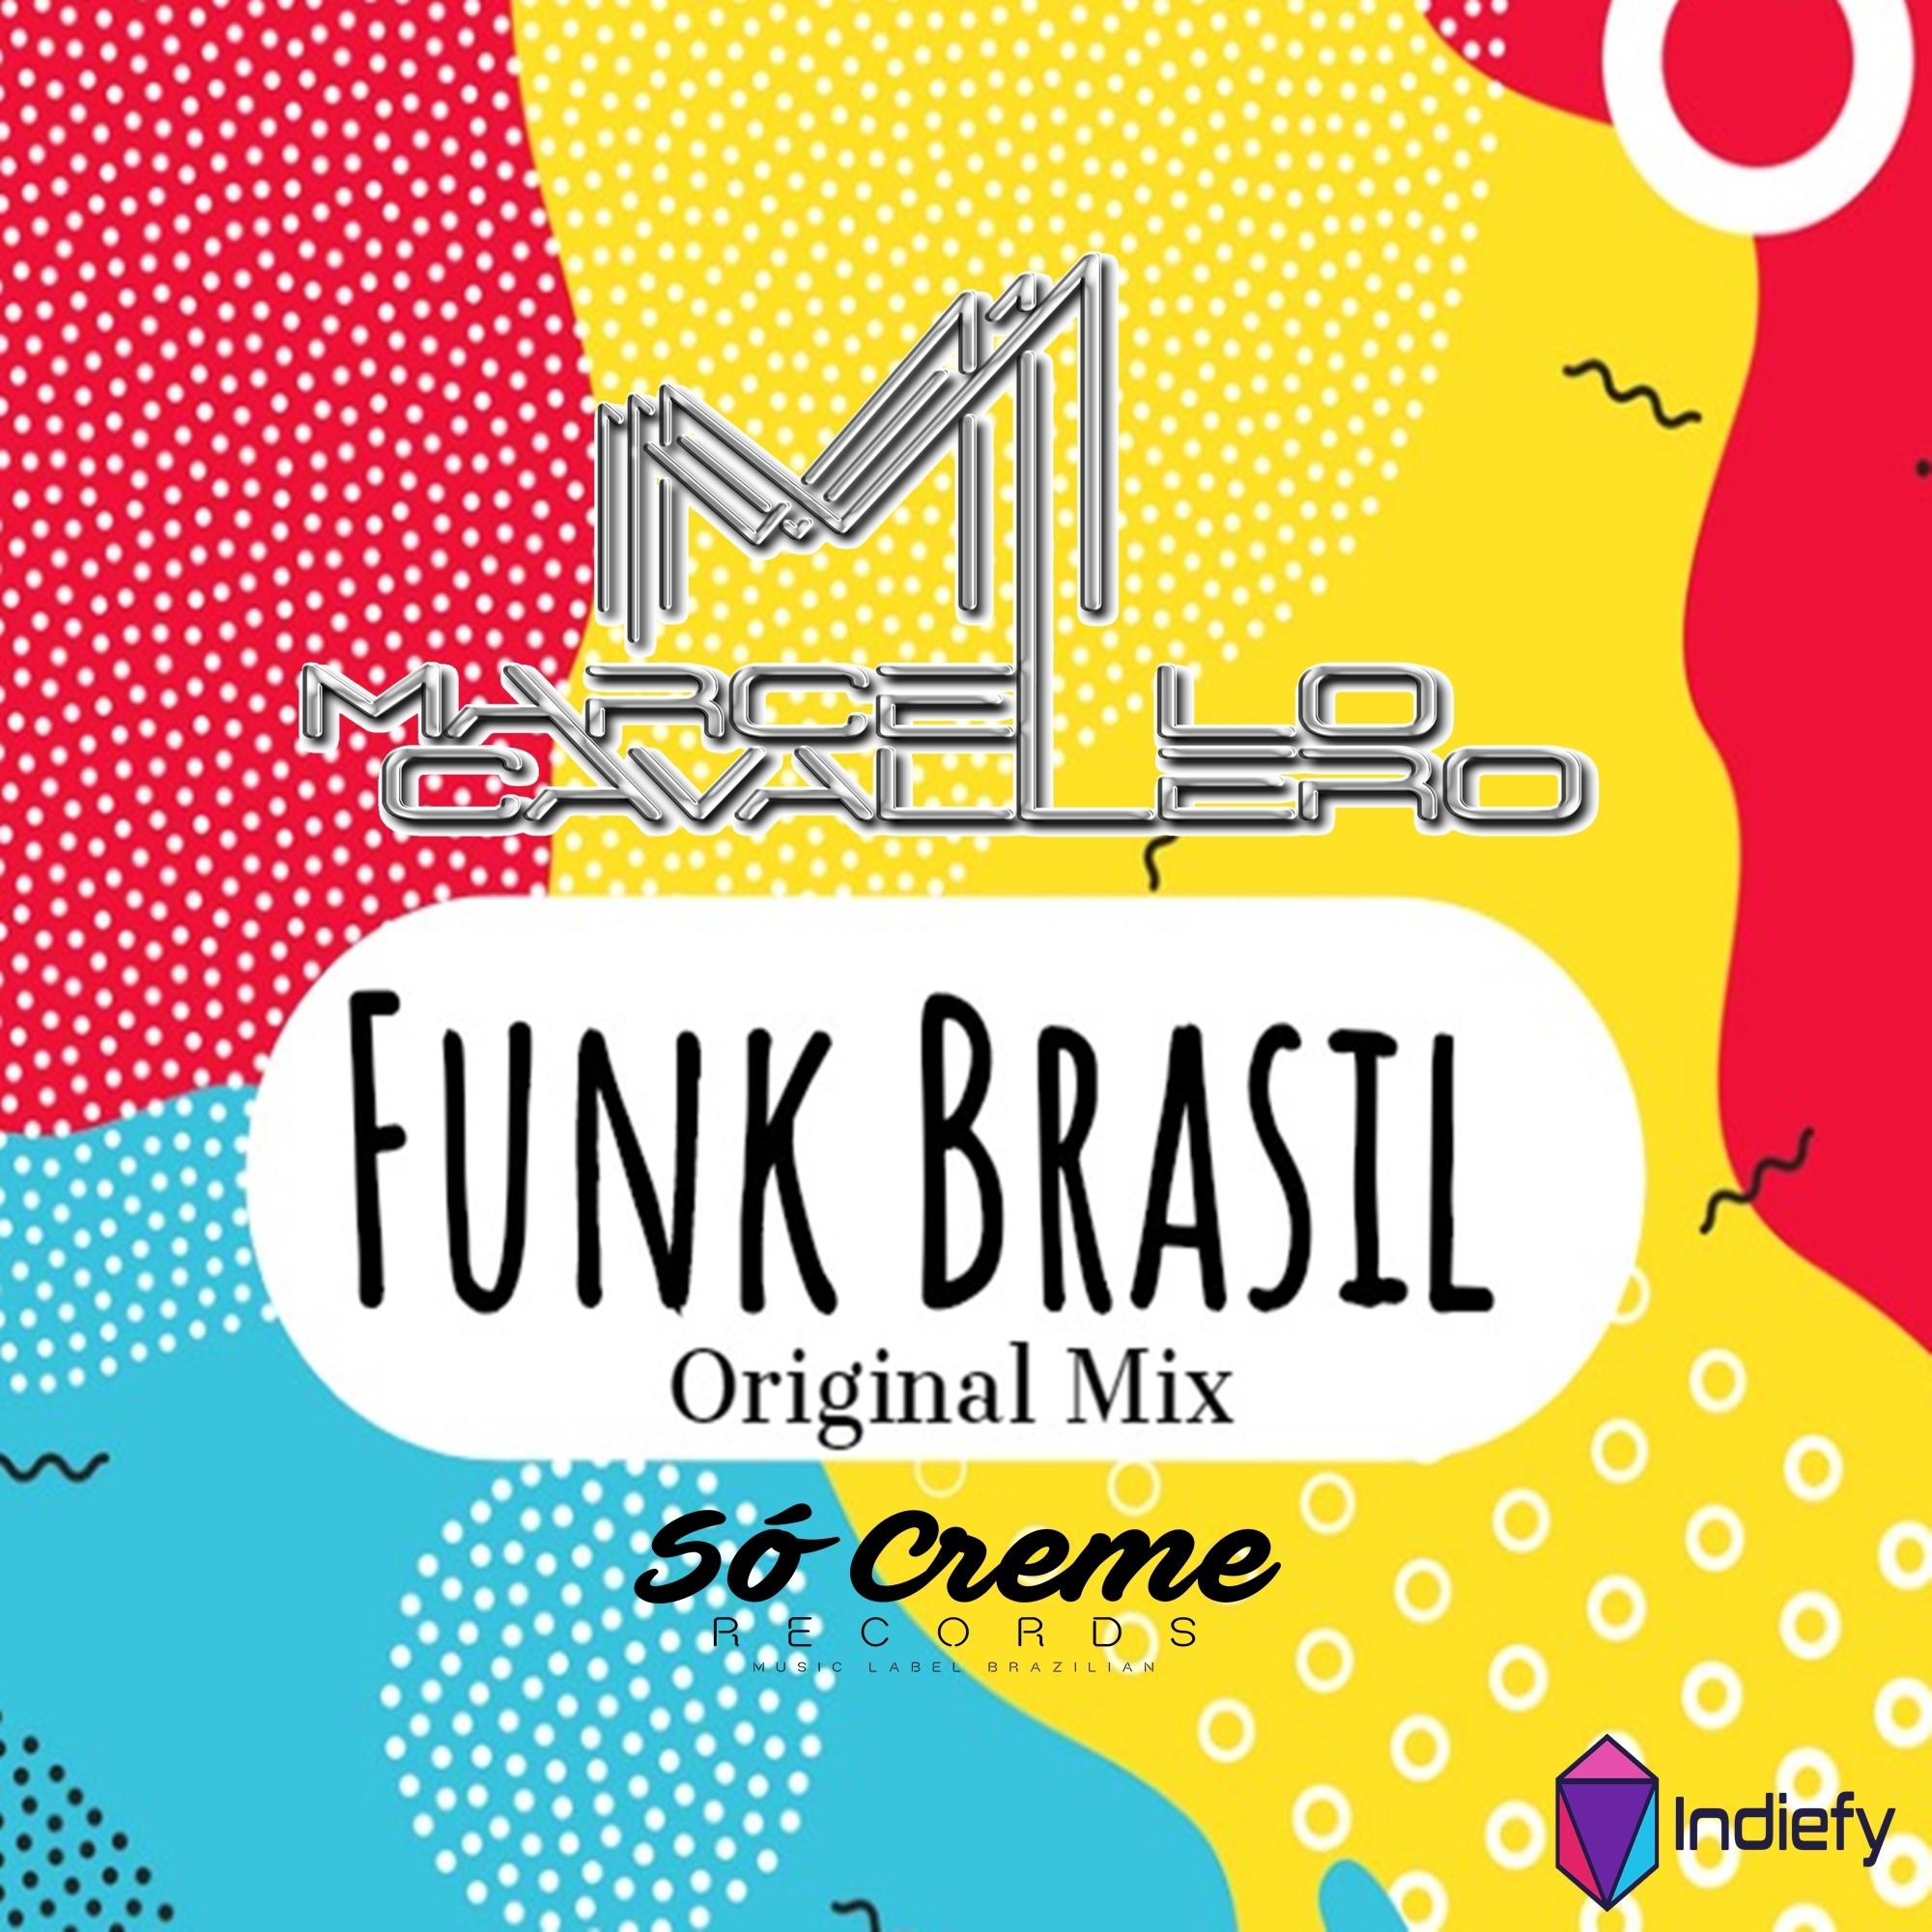 Funk Brasil